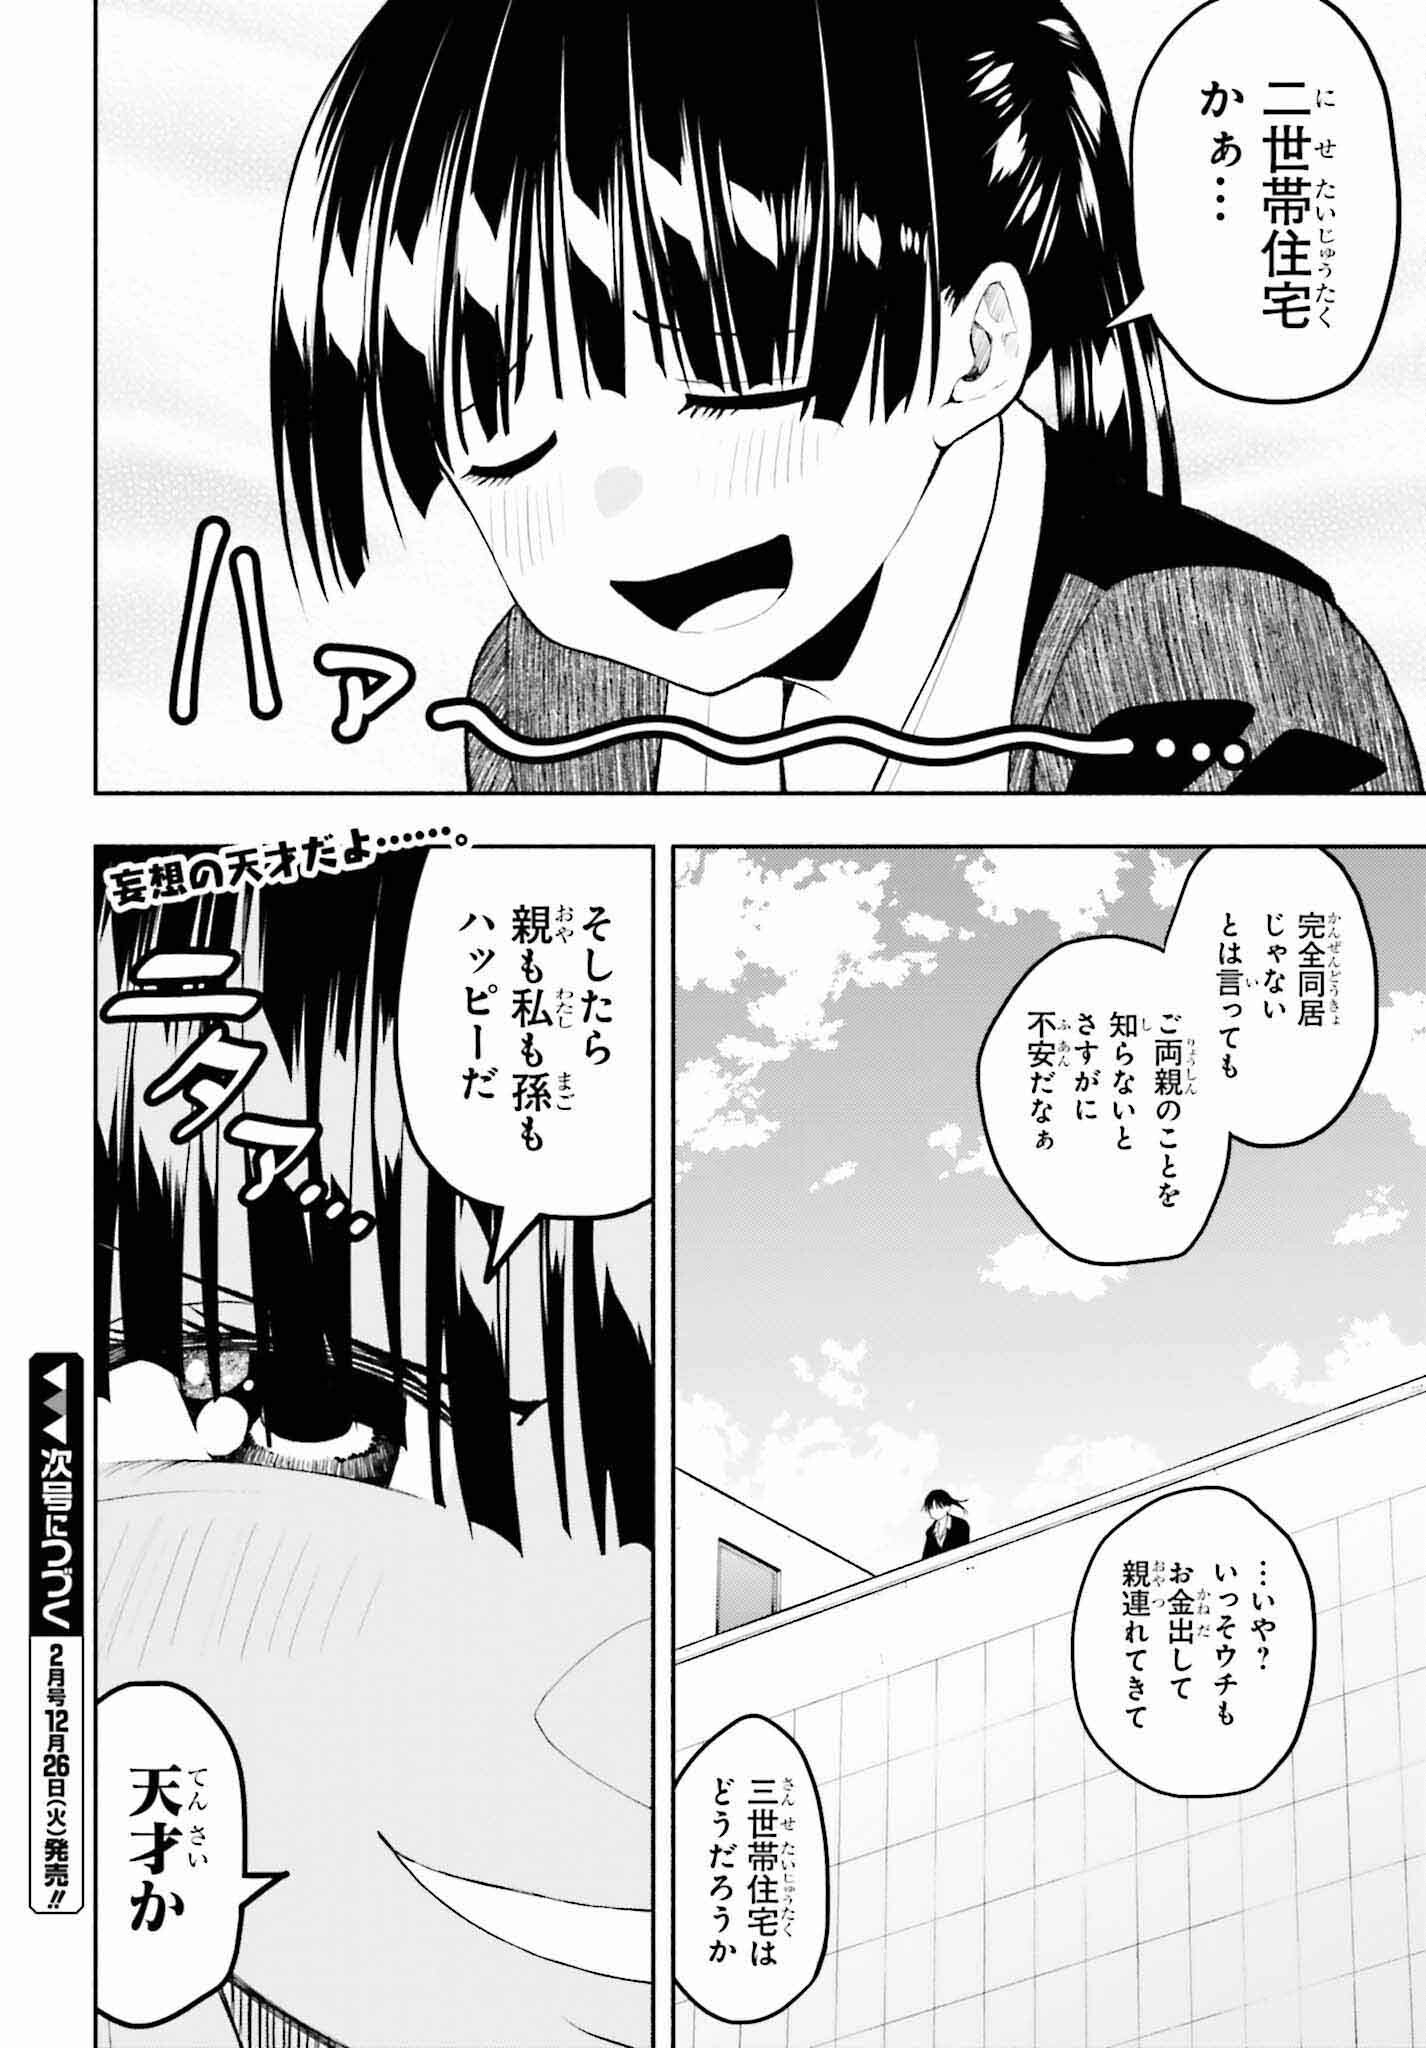 Omiai ni Sugoi Komyushou ga Kita - Chapter 8 - Page 14